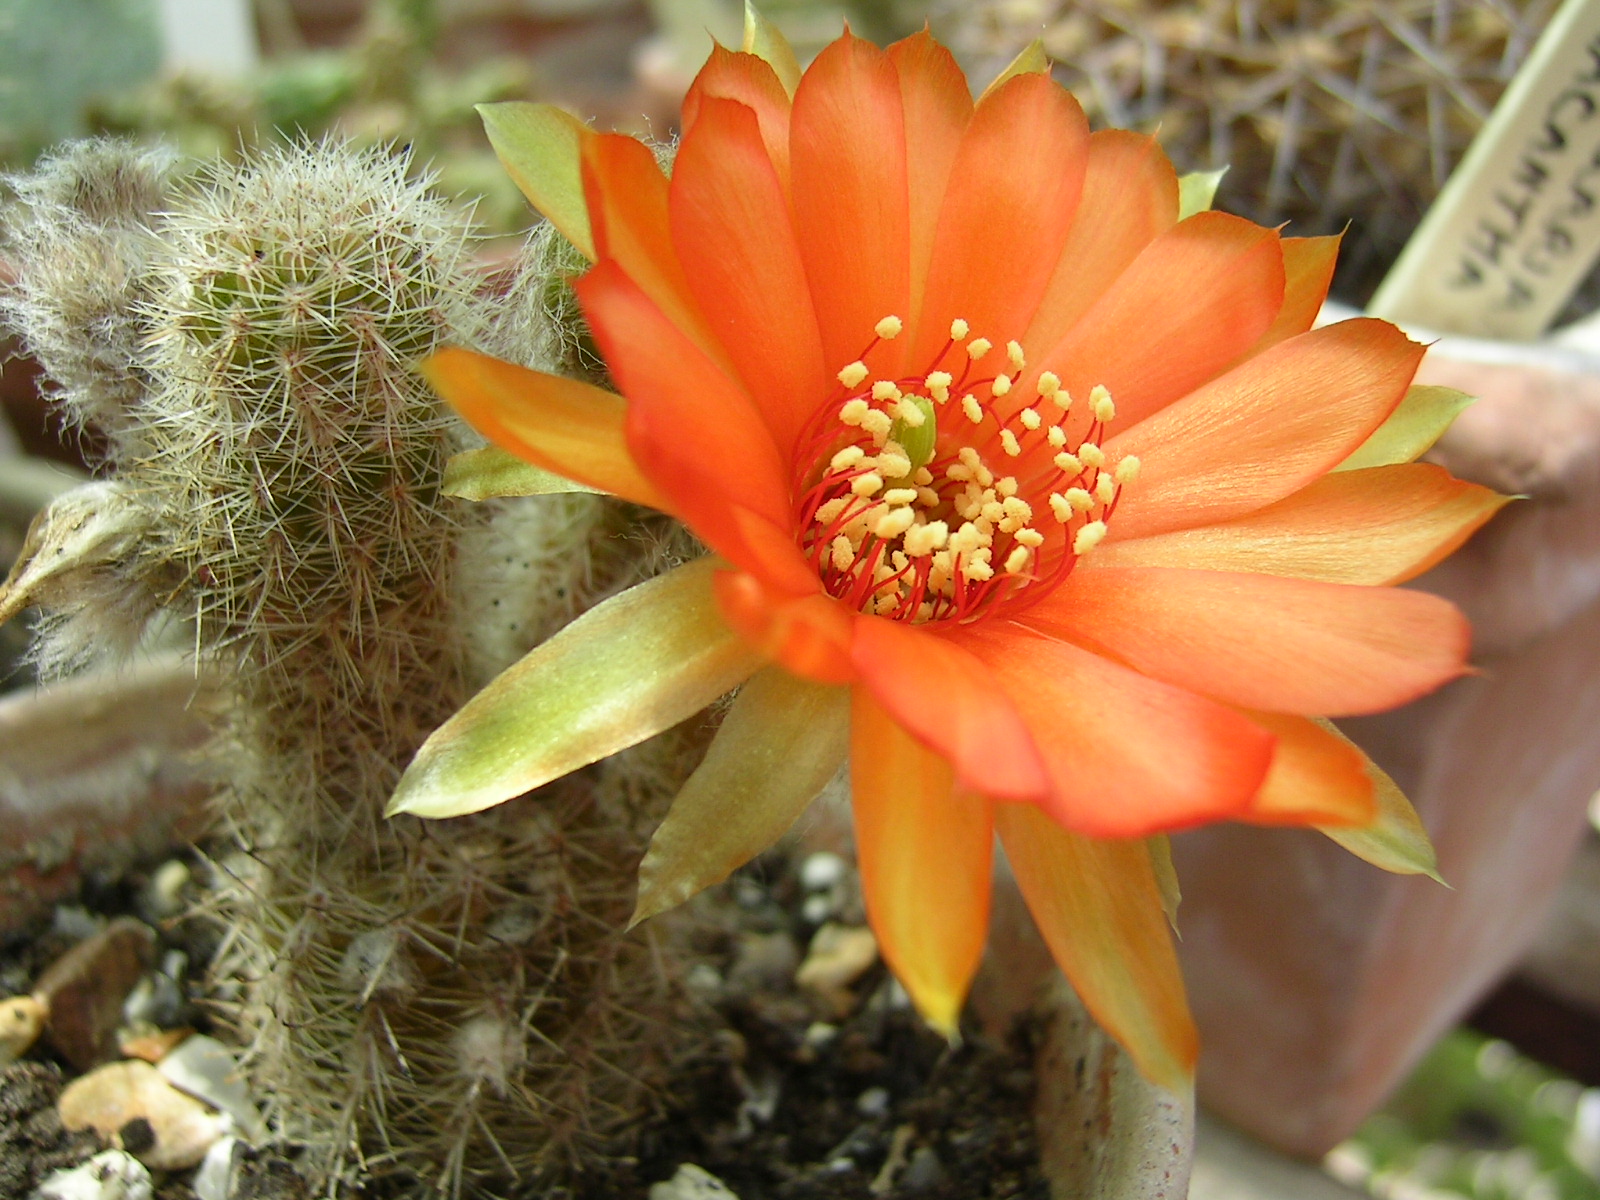 Flowering : Beauty Flowering Cactus Plants With Orange Flower ...